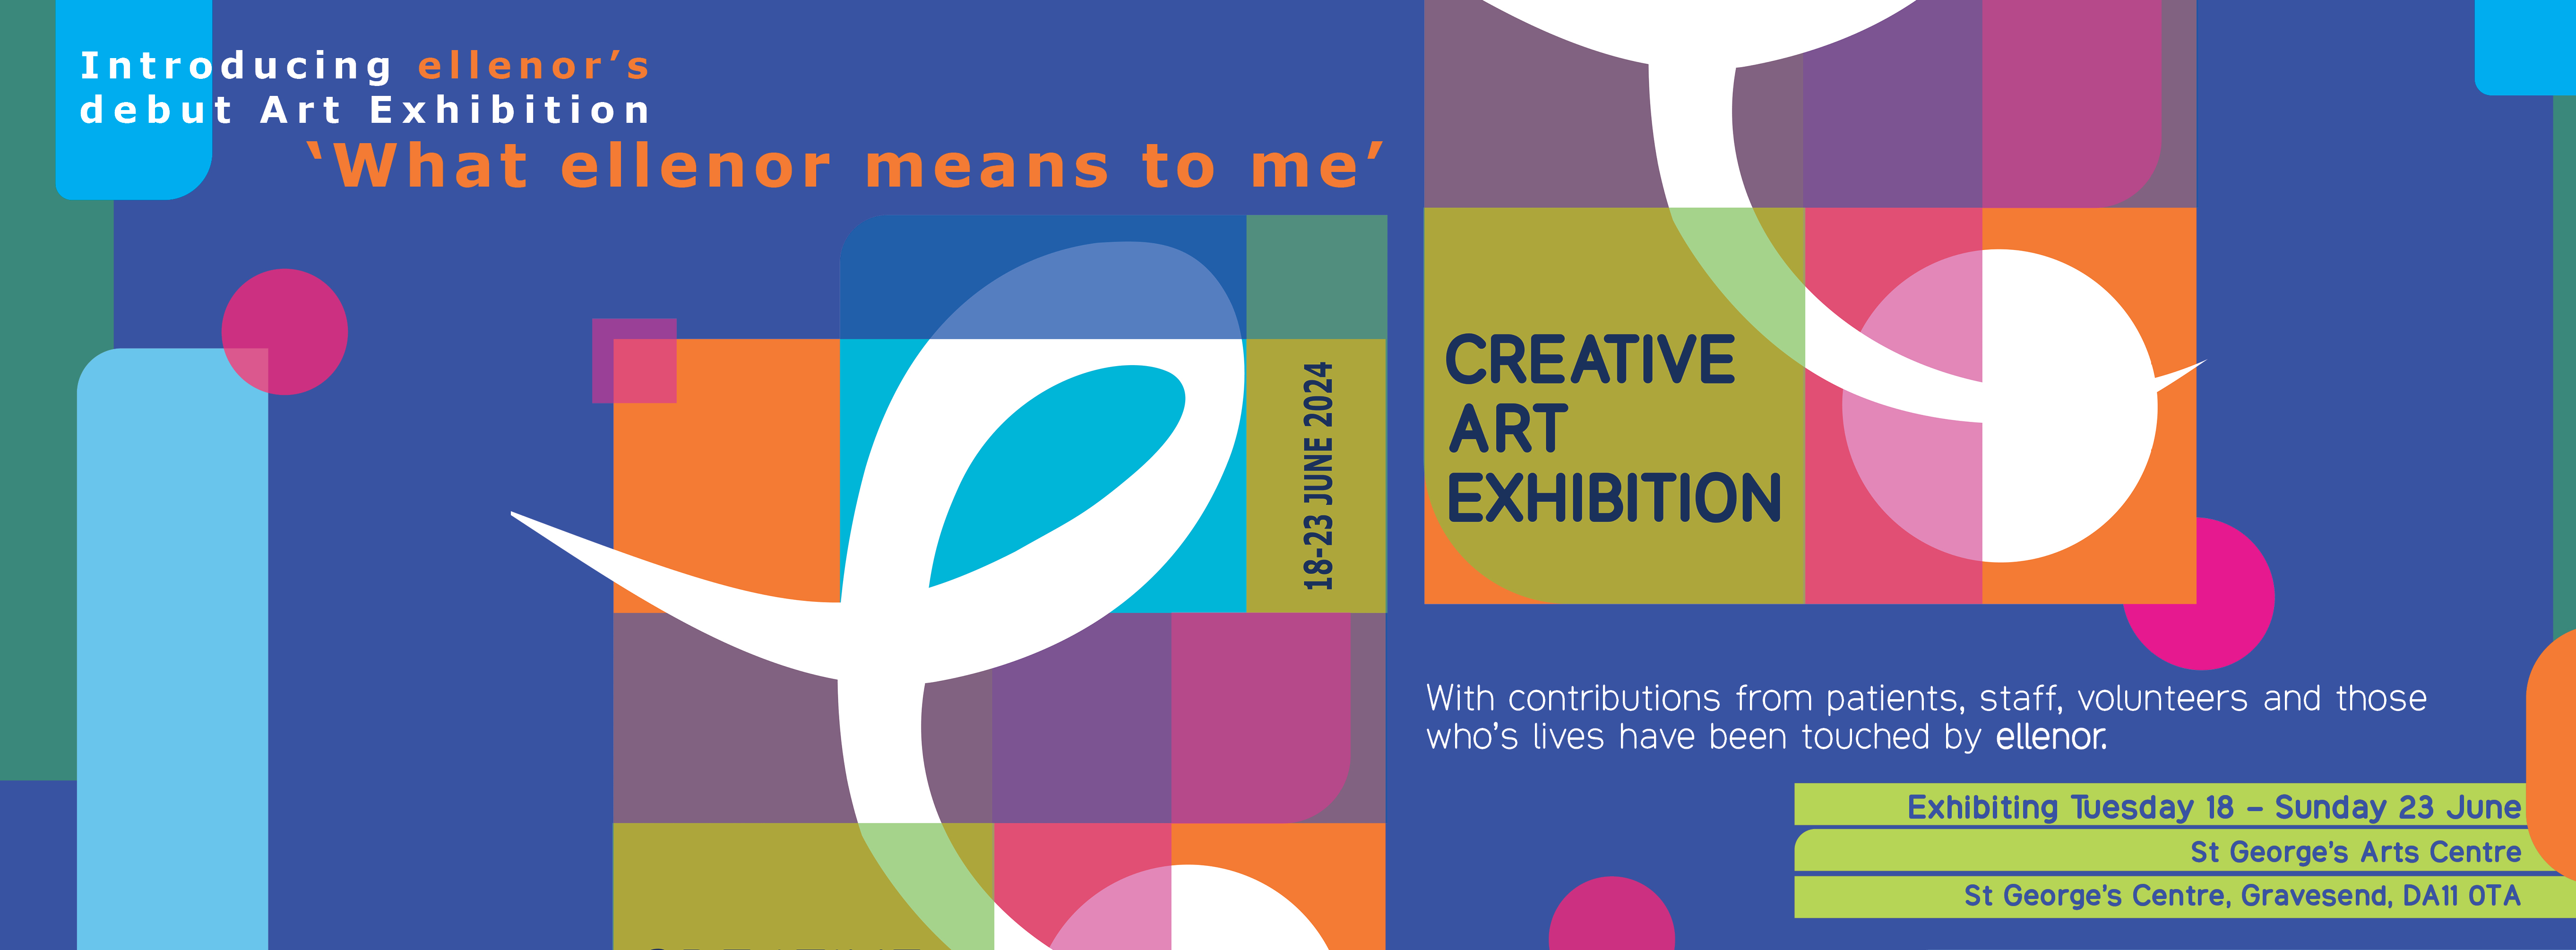 Art Exhibition Carousel Website Banner V2